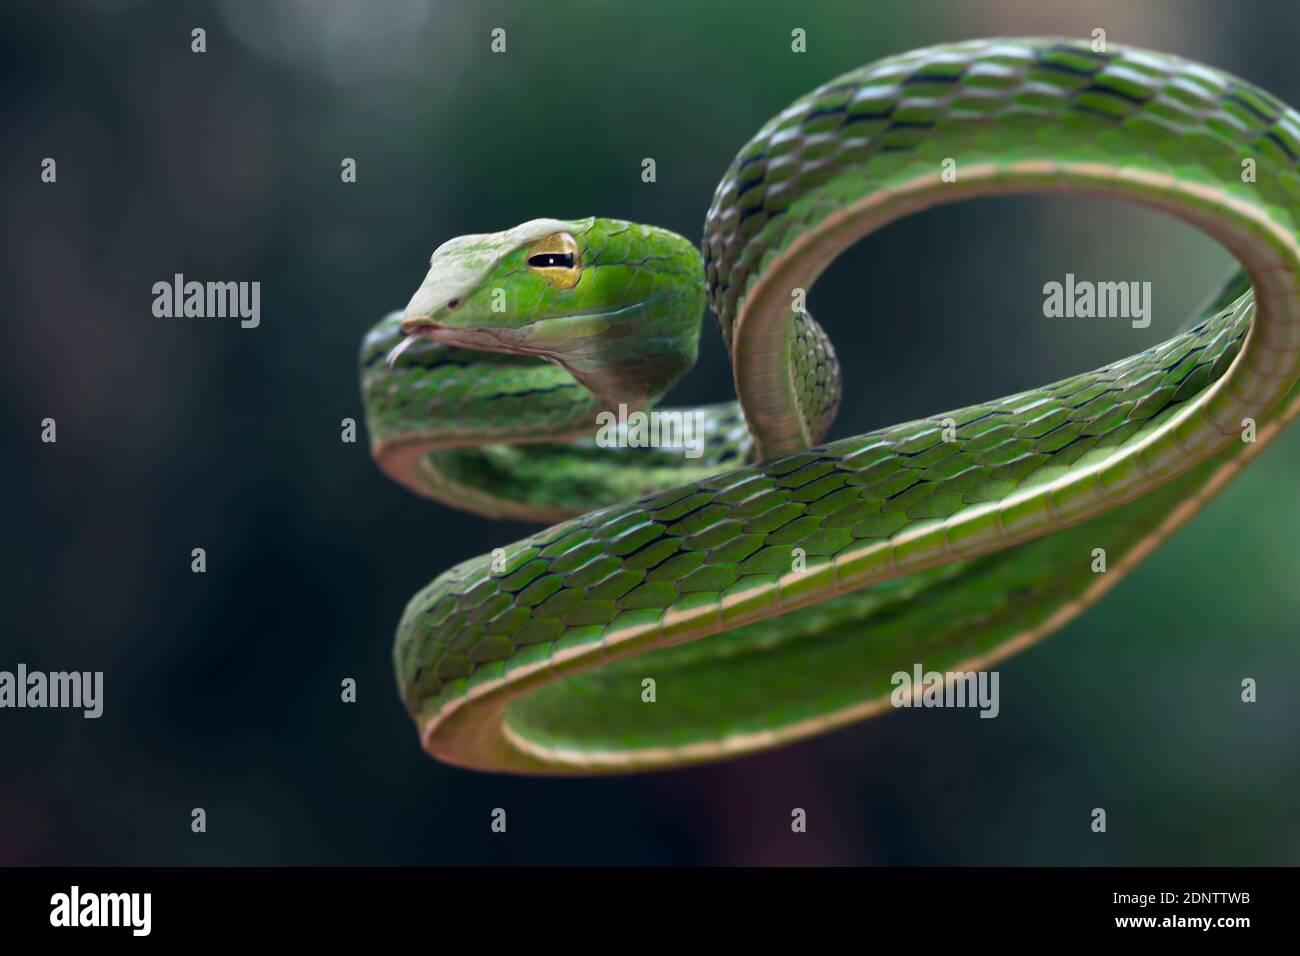 Gros plan d'un serpent de vigne asiatique sur une branche, Indonésie Banque D'Images